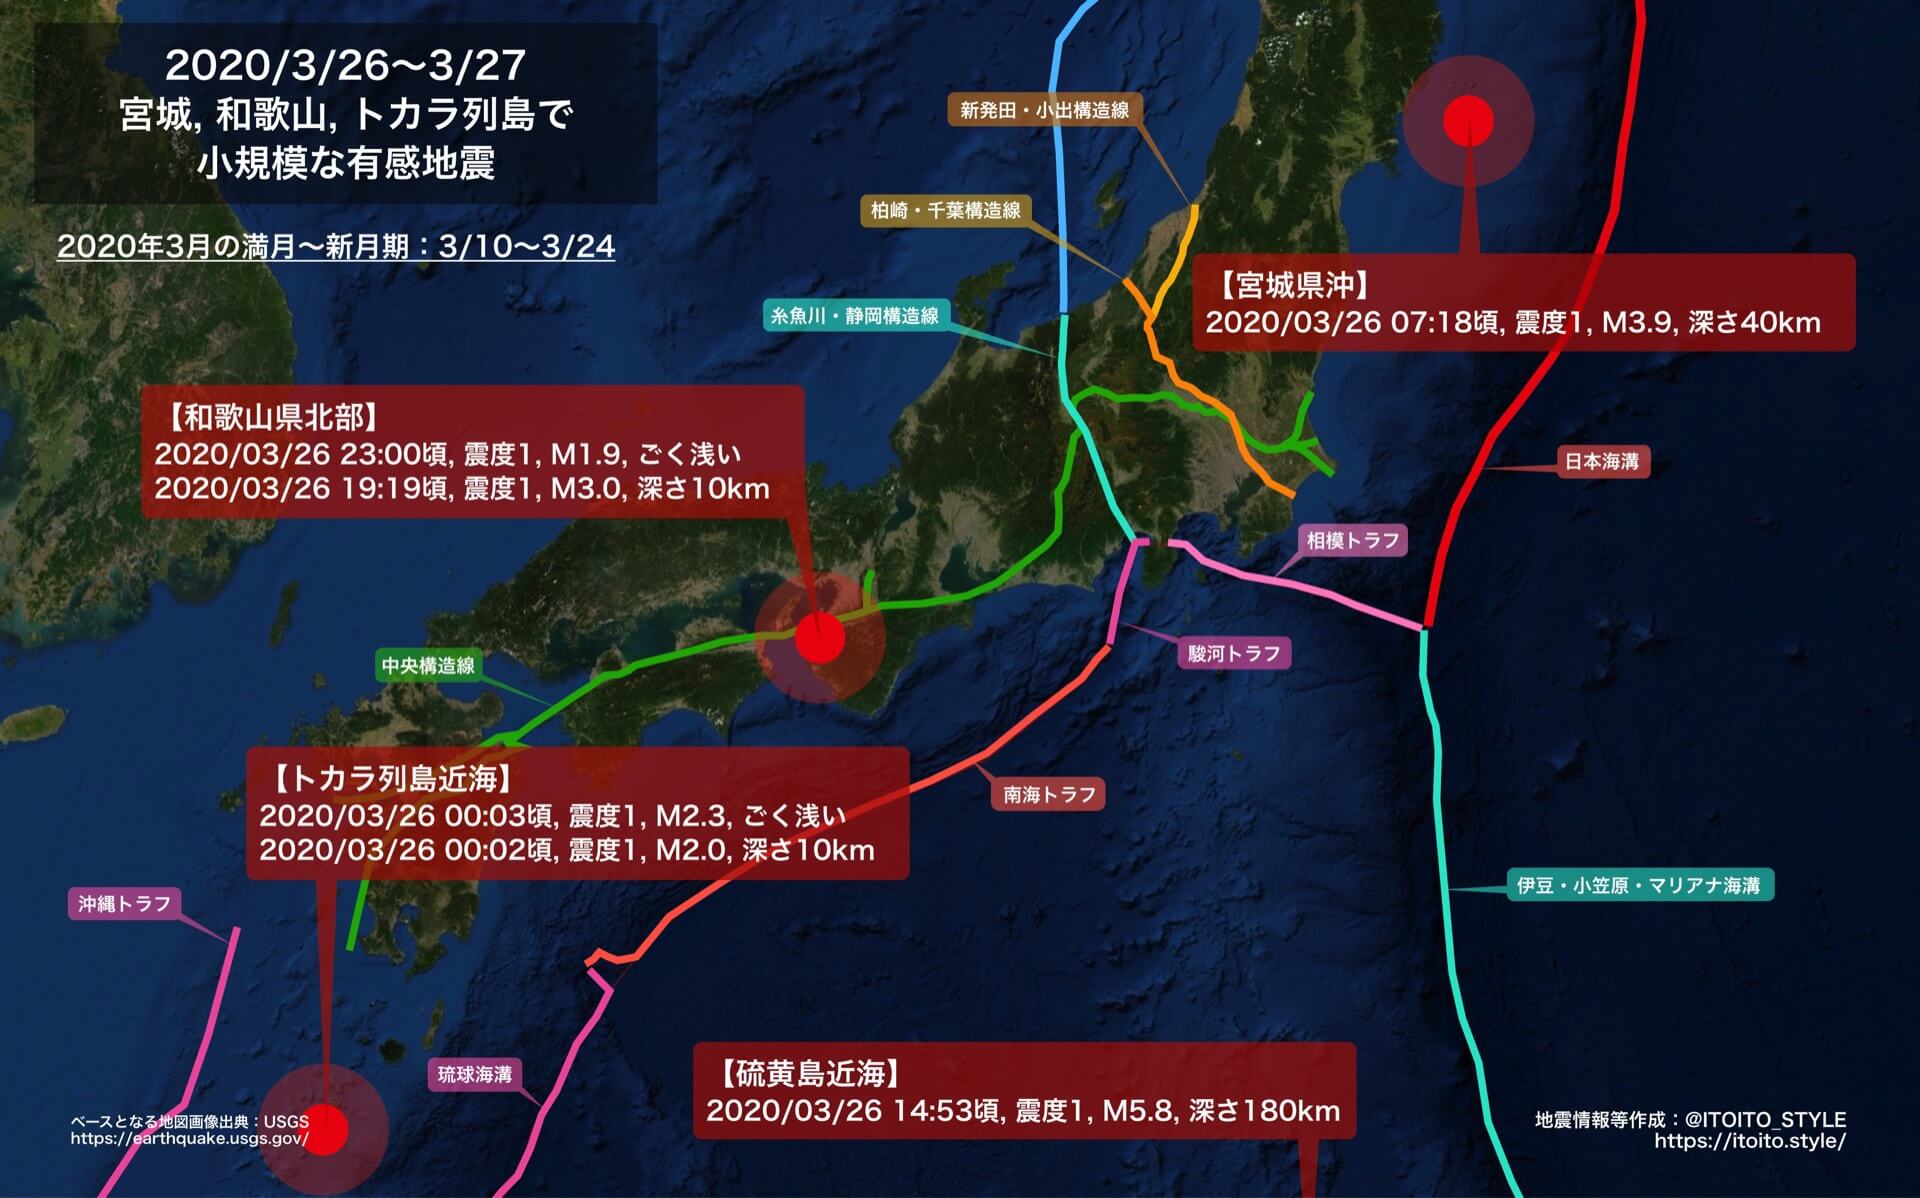 全国 宮城 和歌山 トカラ列島 硫黄島で小規模な有感地震 3 26 3 27 Itoito Style